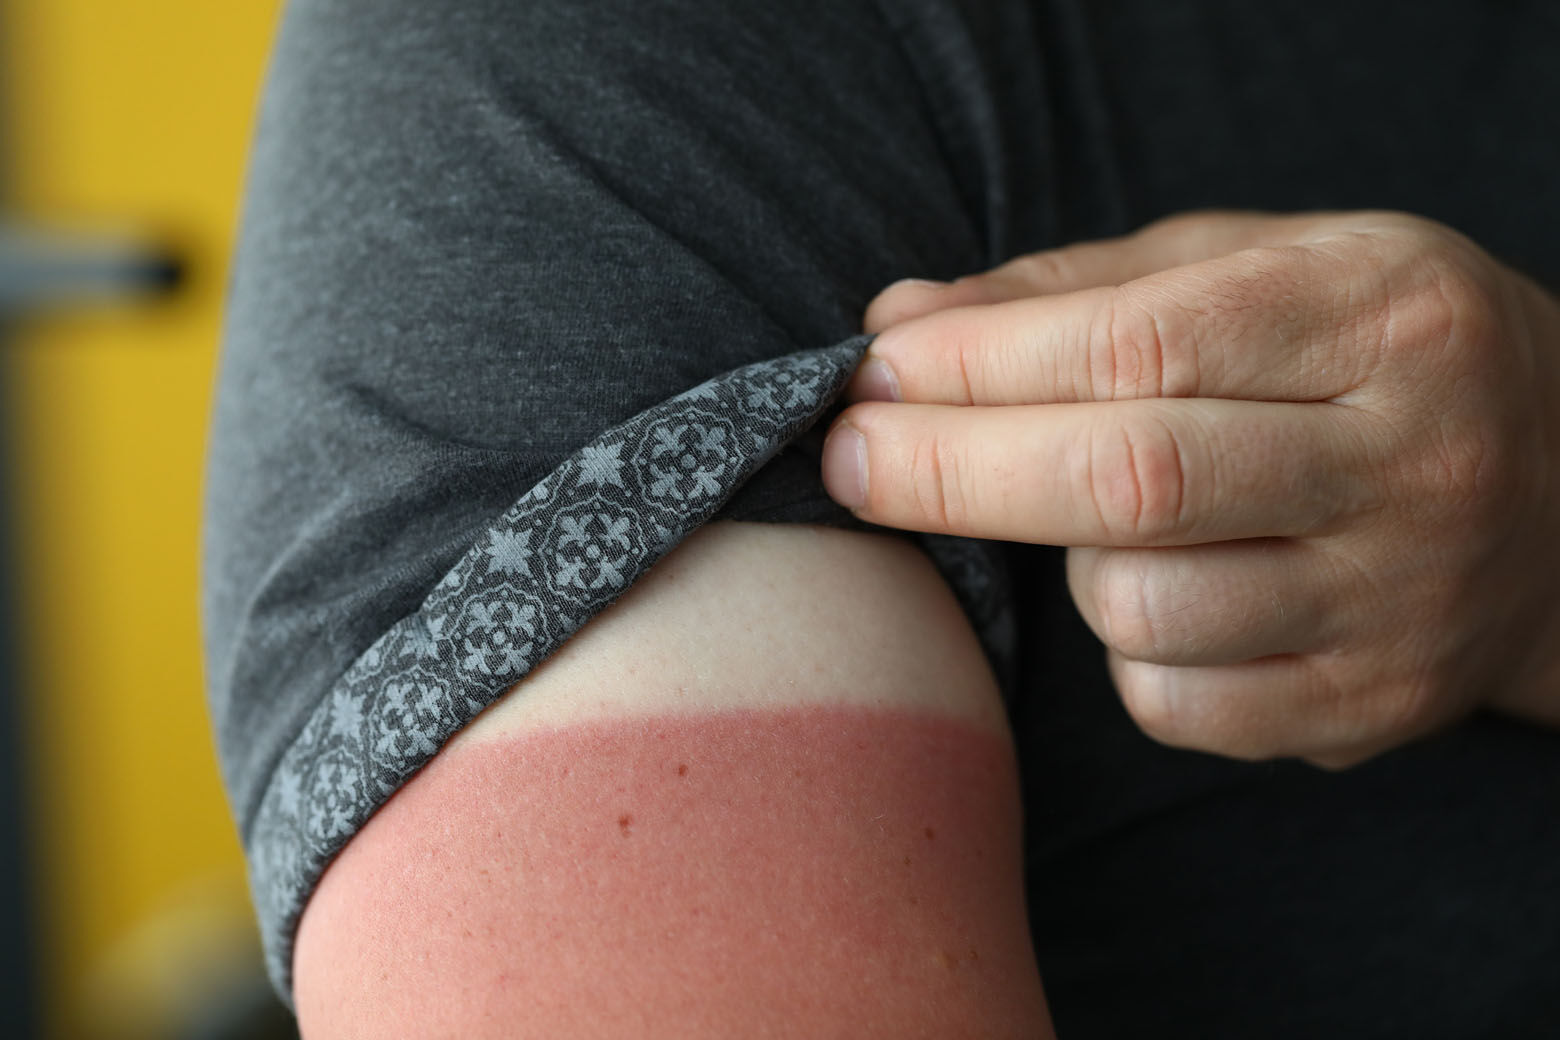 How to treat sunburn fast - WTOP News